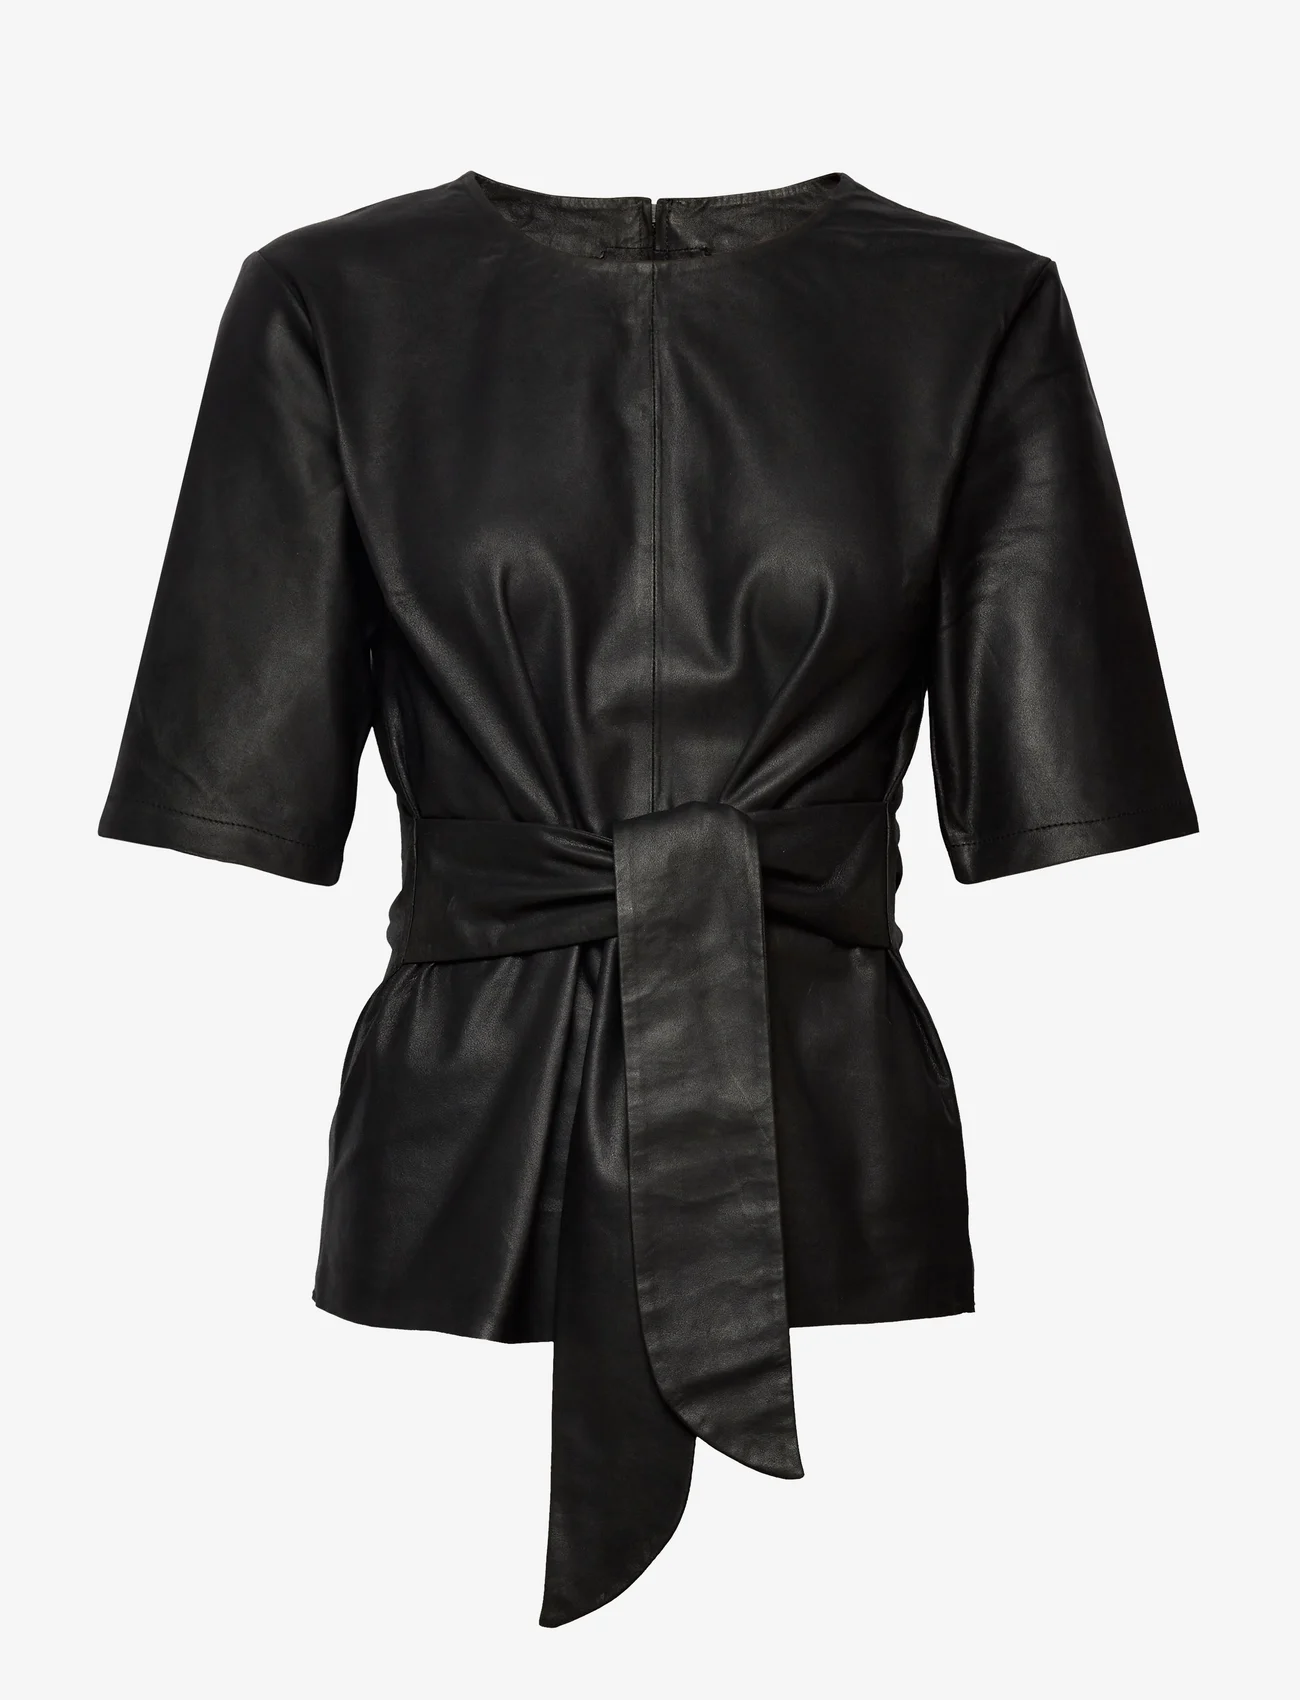 DEPECHE - Top - short-sleeved blouses - black - 0